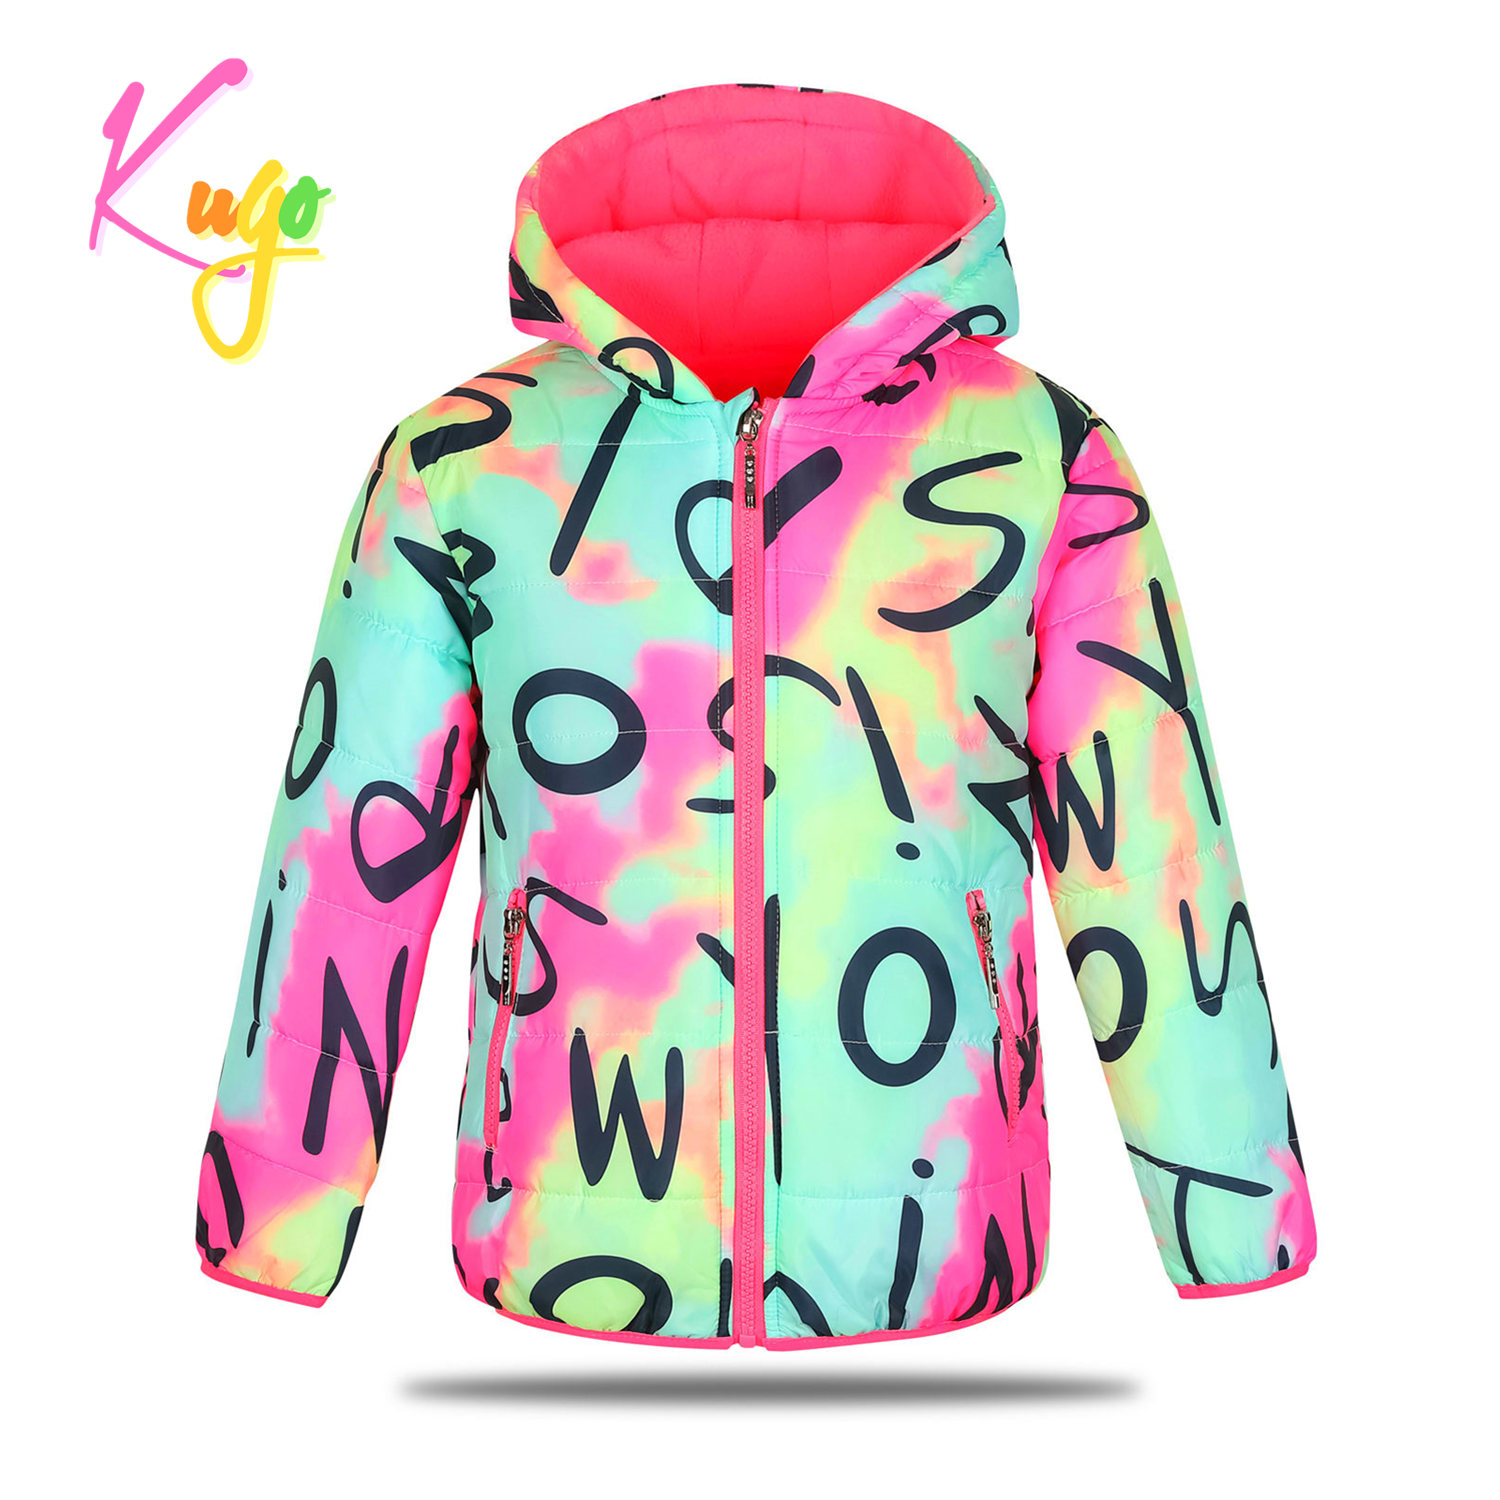 Dívčí zimní bunda - KUGO KM9981, batika/ růžové zipy Barva: Mix barev, Velikost: 164